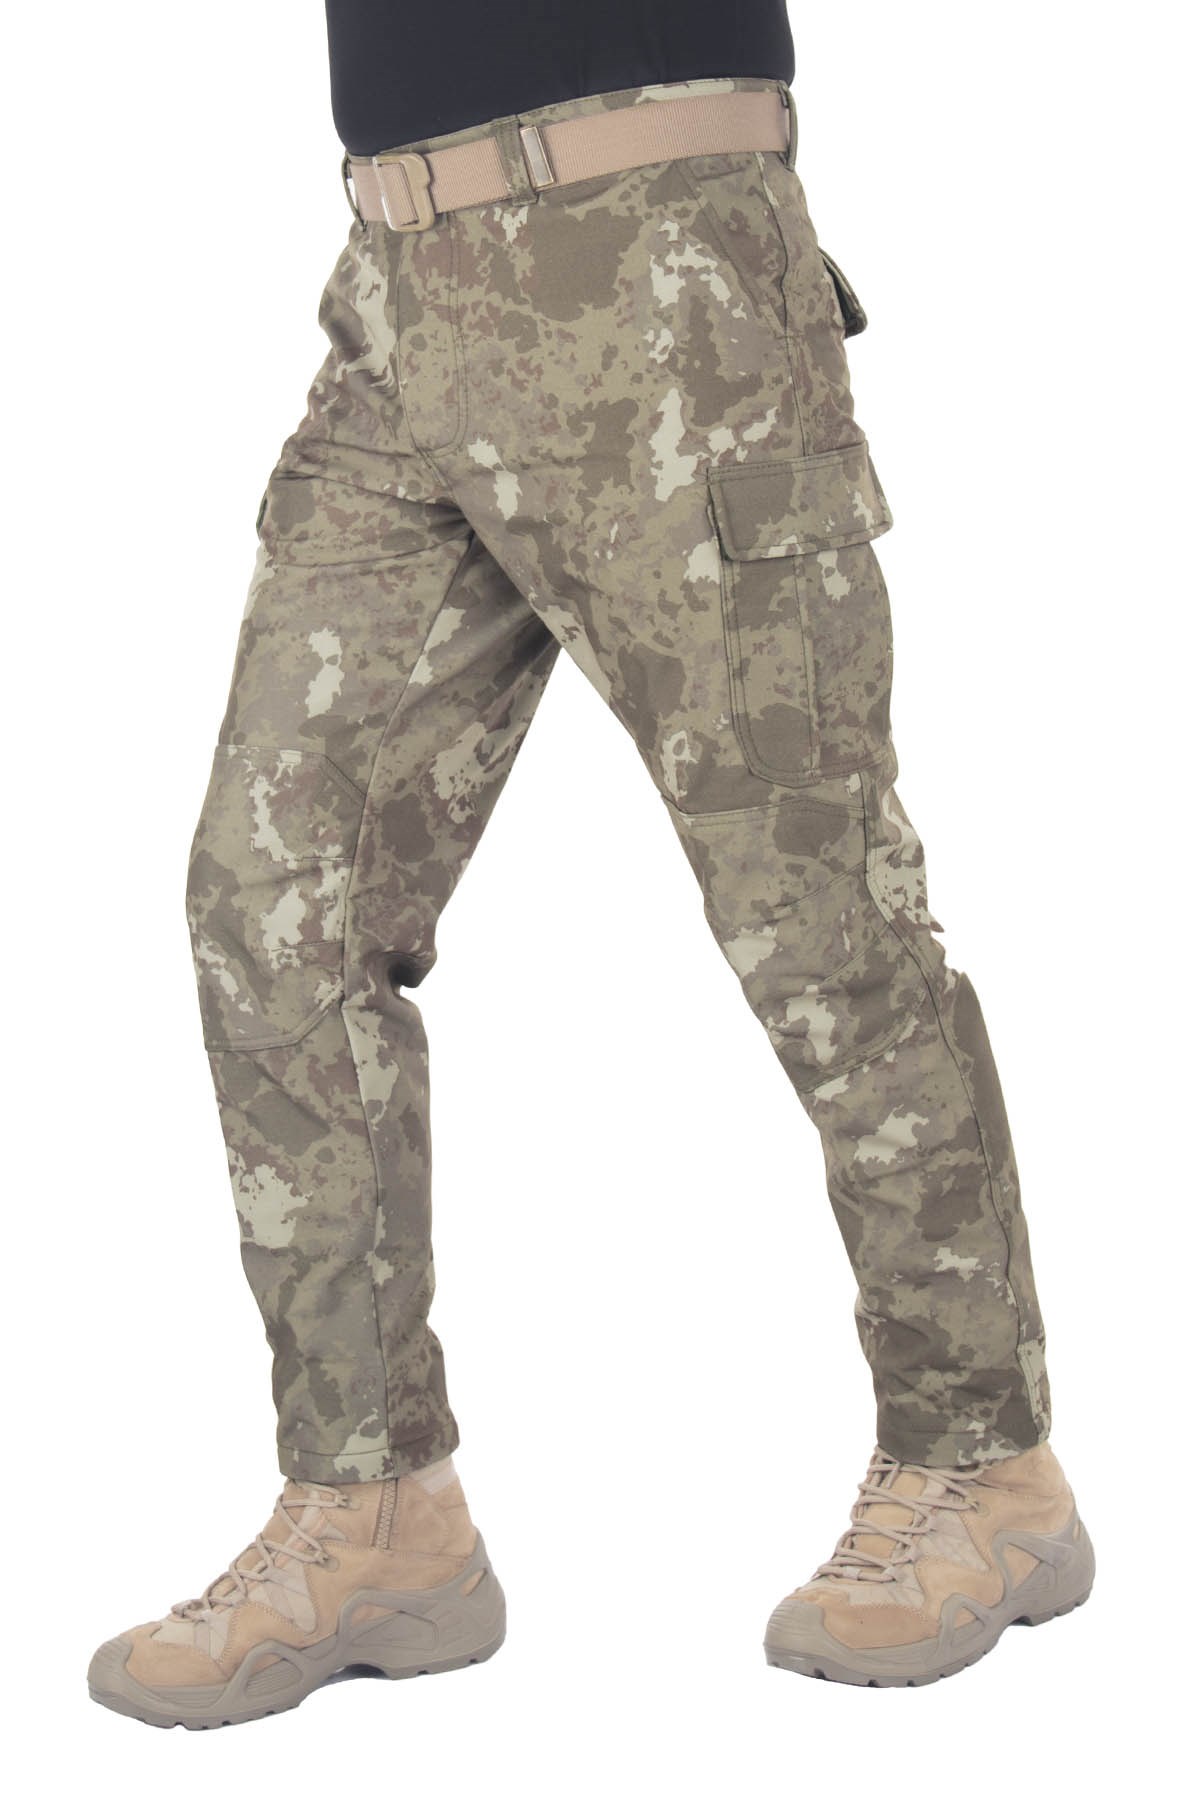 Kara Kuvvetleri Kamuflaj Rüzgar Geçirmez Softshell Pantolon - Polis Sepeti